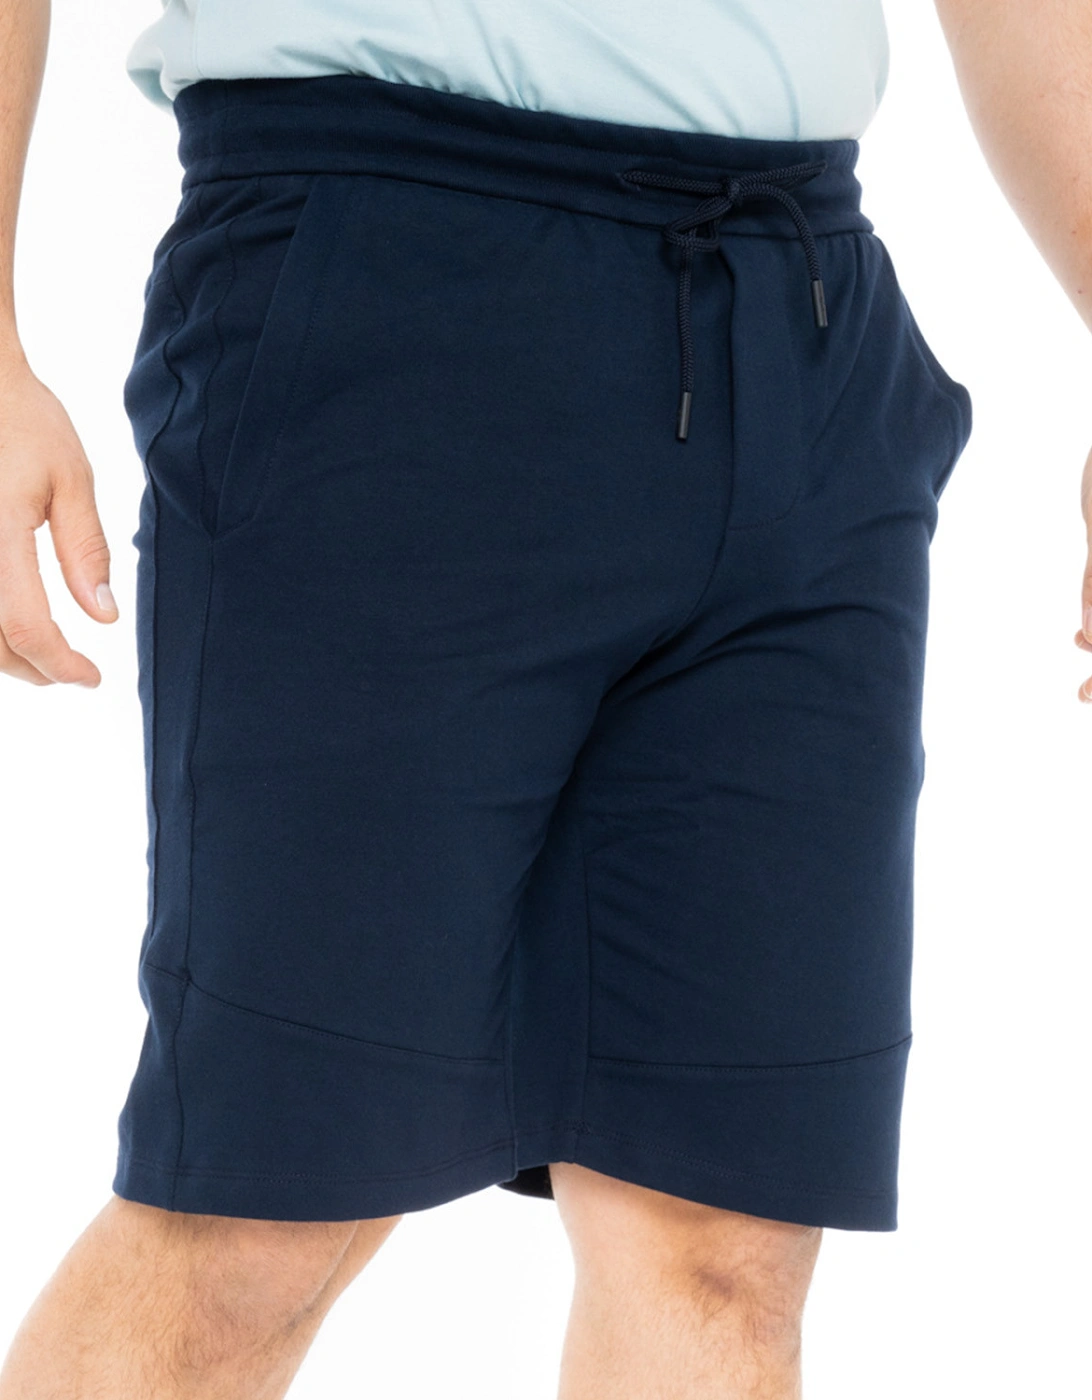 Mens Small Logo Jersey Shorts (Navy)